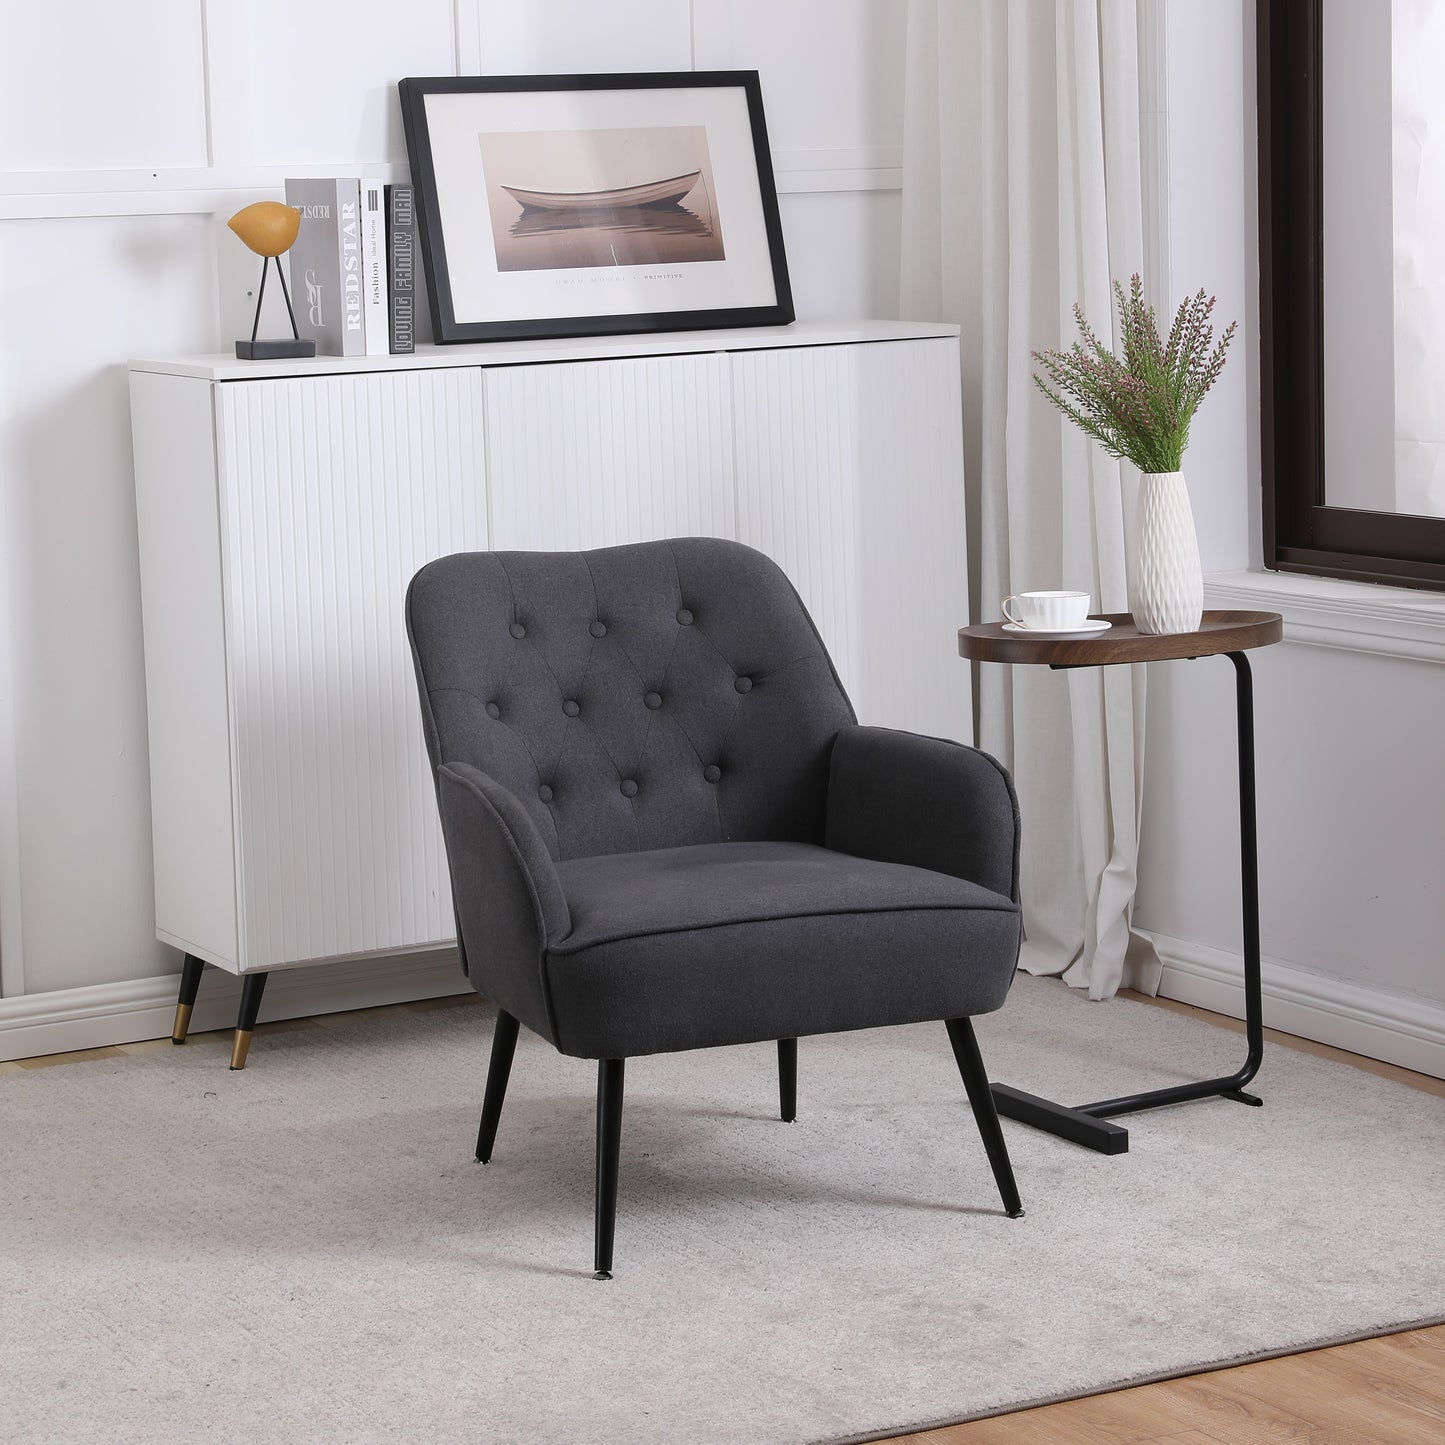 SogesPower Modern Mid Century Chair Velvet Sherpa Armchair, Easy Assemble(Dark Gray)